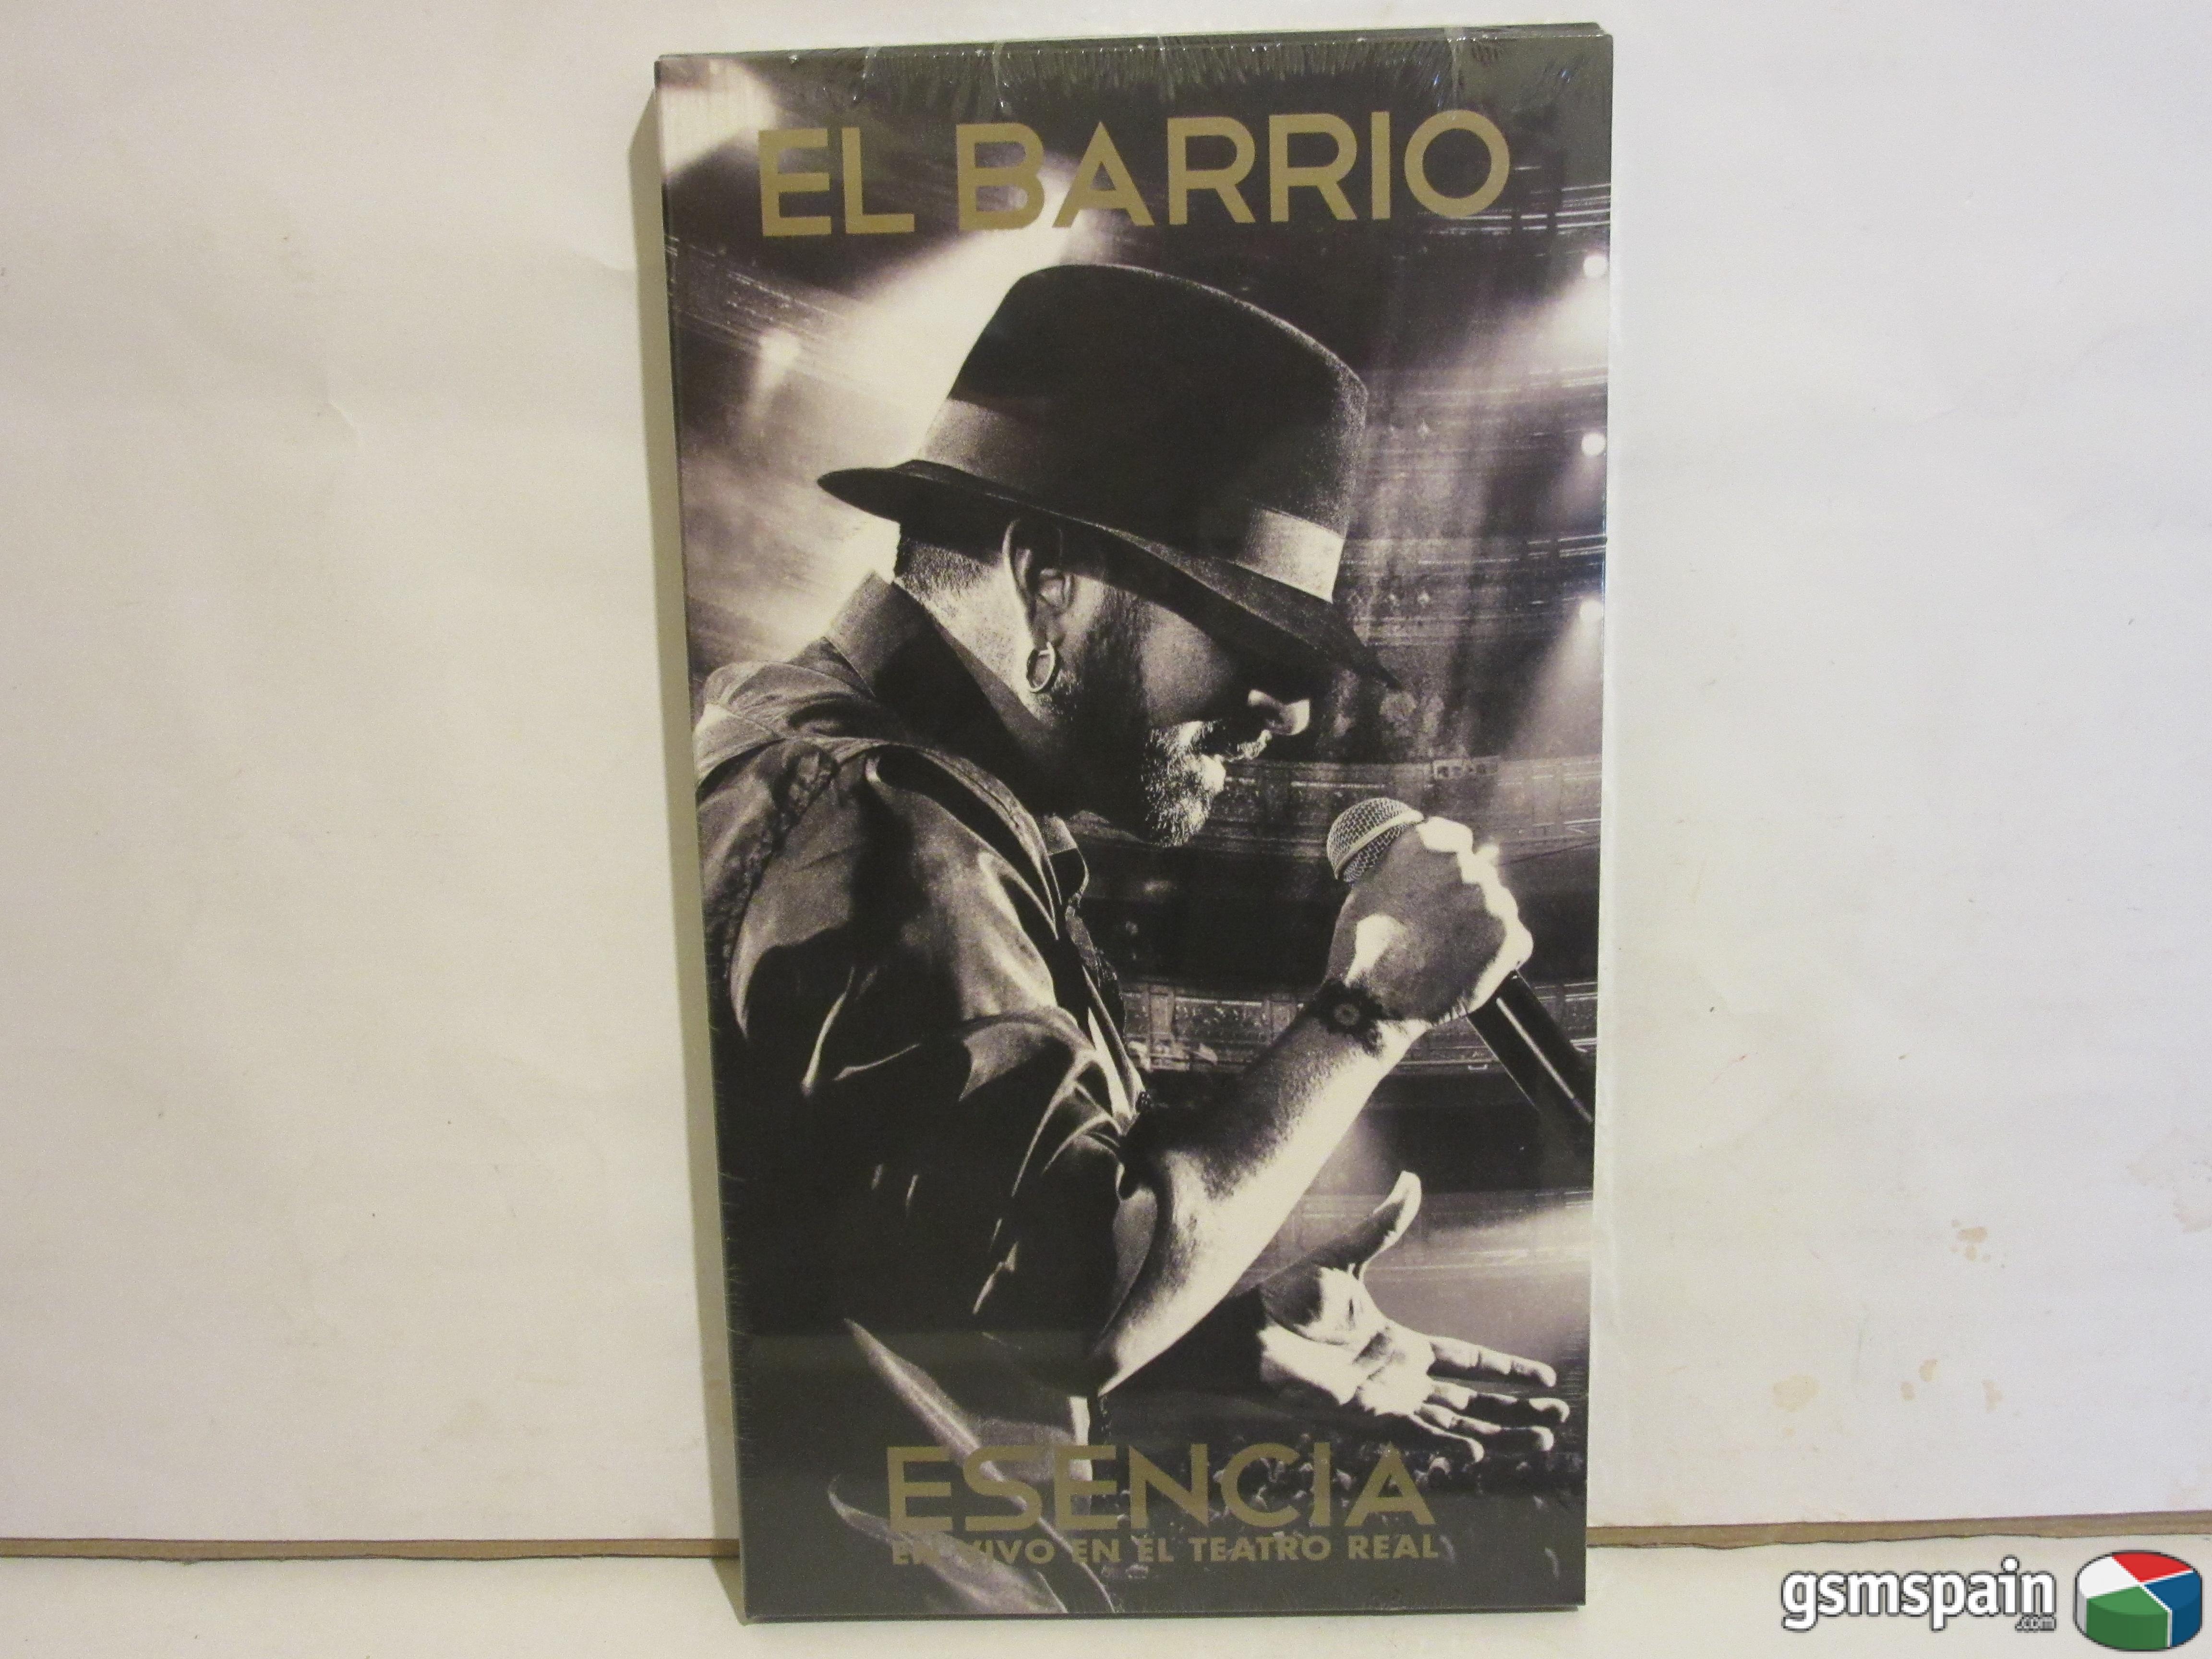 [VENDO] El Barrio - Esencia En Vivo En El Teatro Real - Edicin Deluxe CD Y DVD - NUEVO